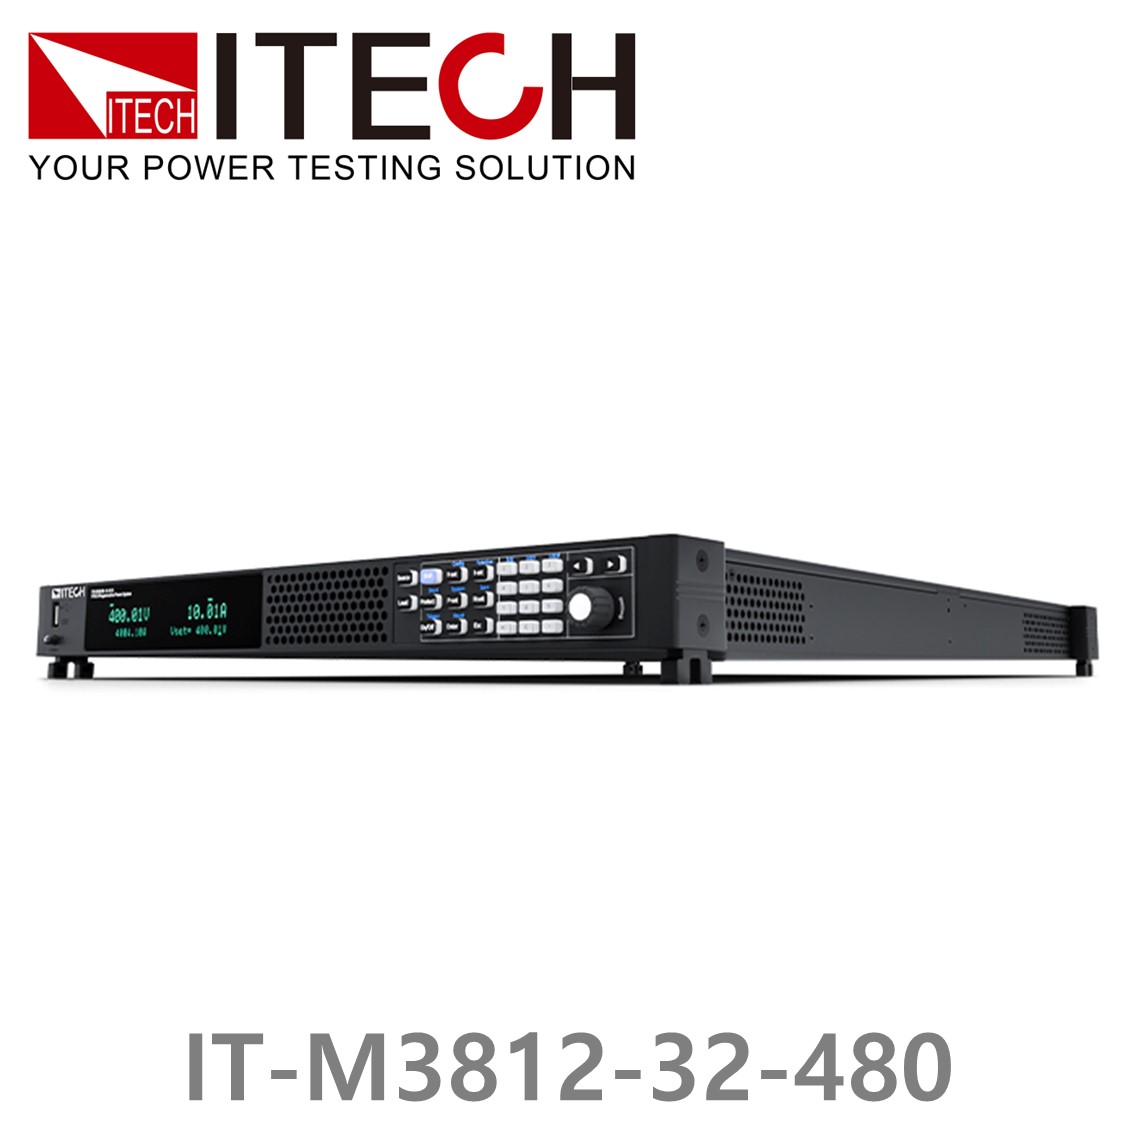 [ ITECH ] IT-M3812-32-480, 32V/480A/12000W DC 전자로드, DC전자부하기